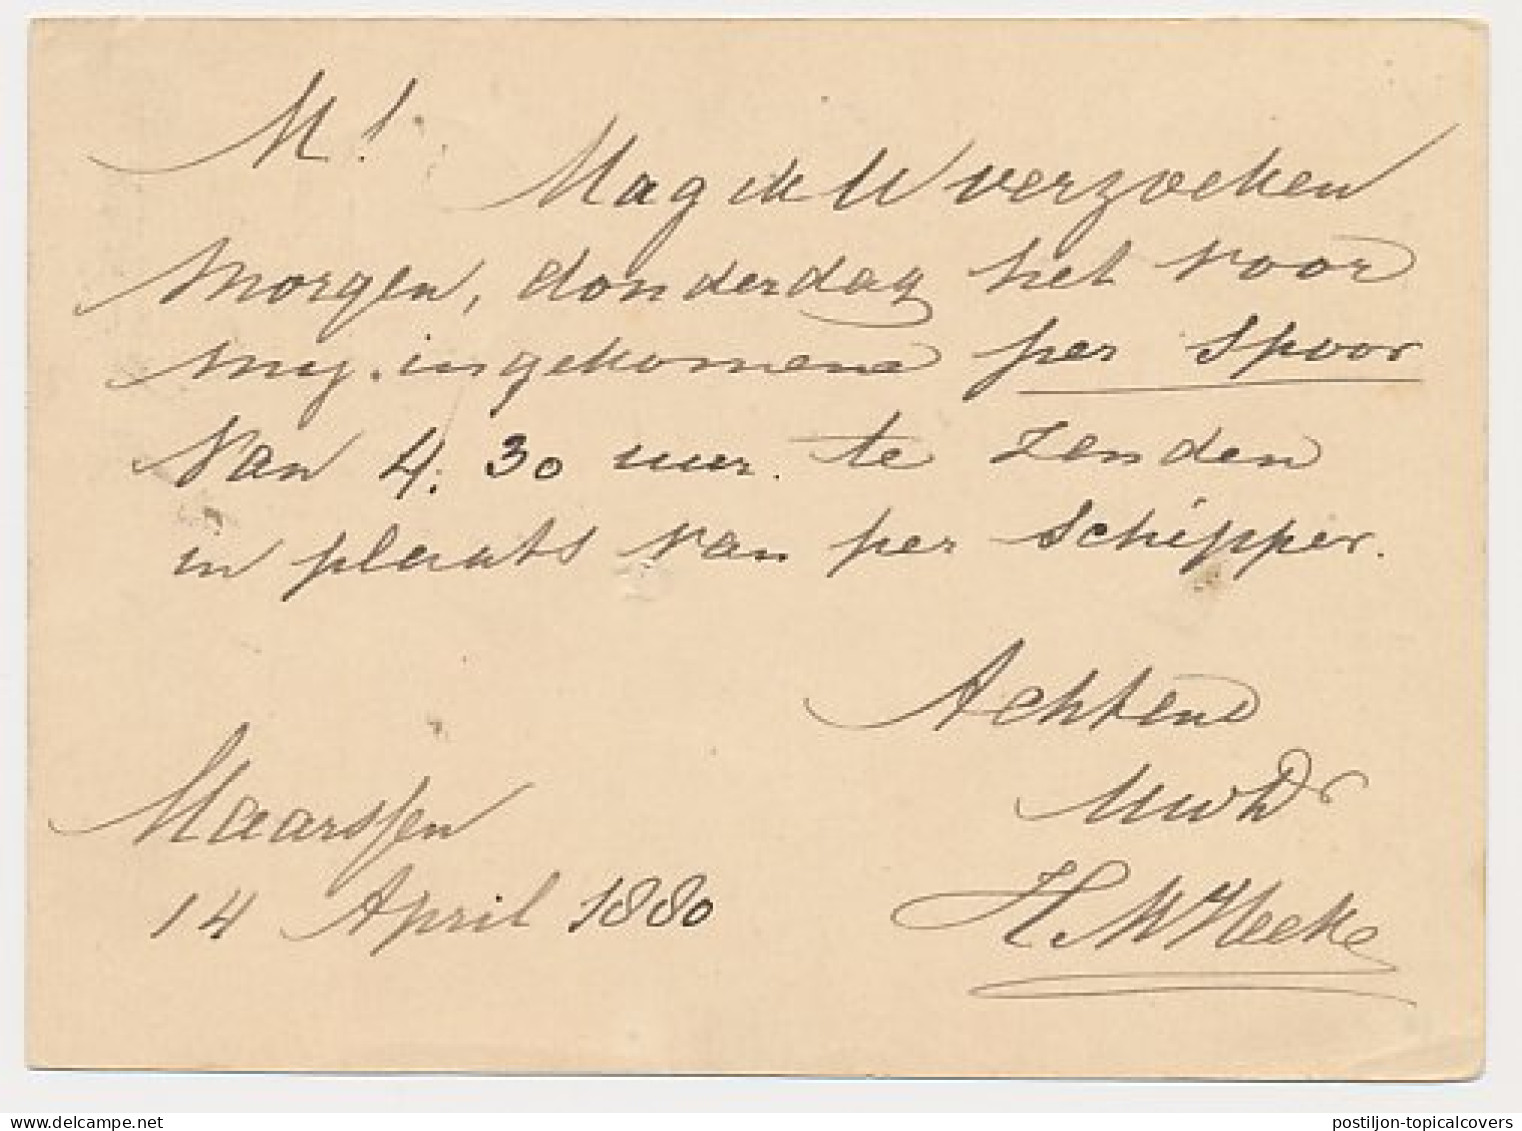 Kleinrondstempel Maarssen 1880 - Non Classificati